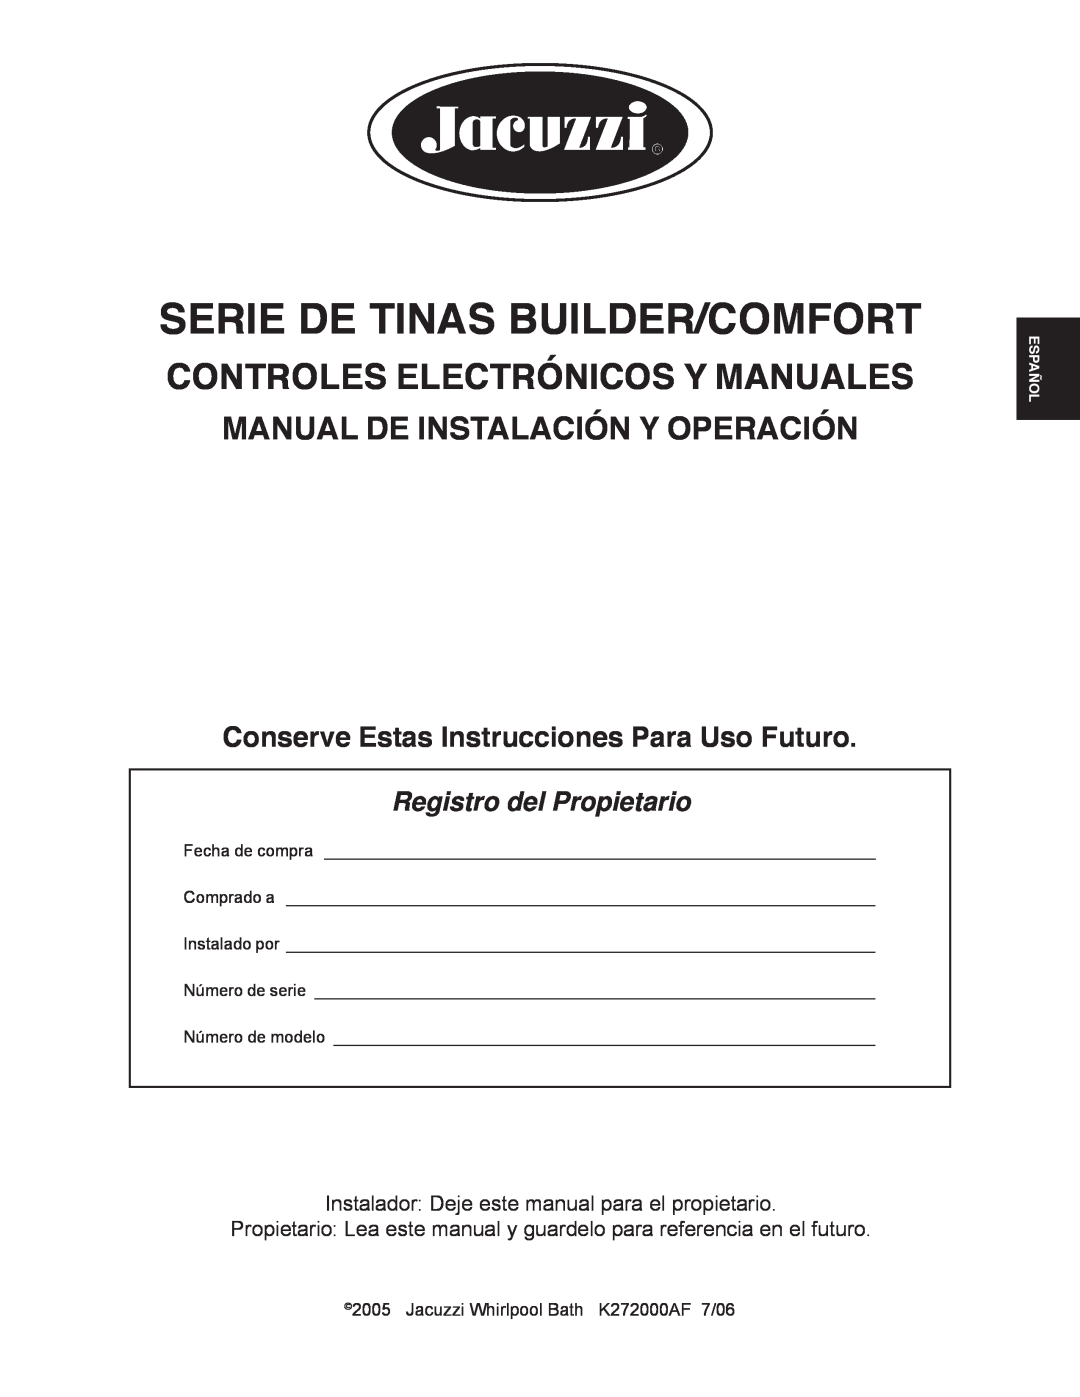 Jacuzzi K272000AF 7/06 manual Serie De Tinas Builder/Comfort, Controles Electrónicos Y Manuales, Registro del Propietario 